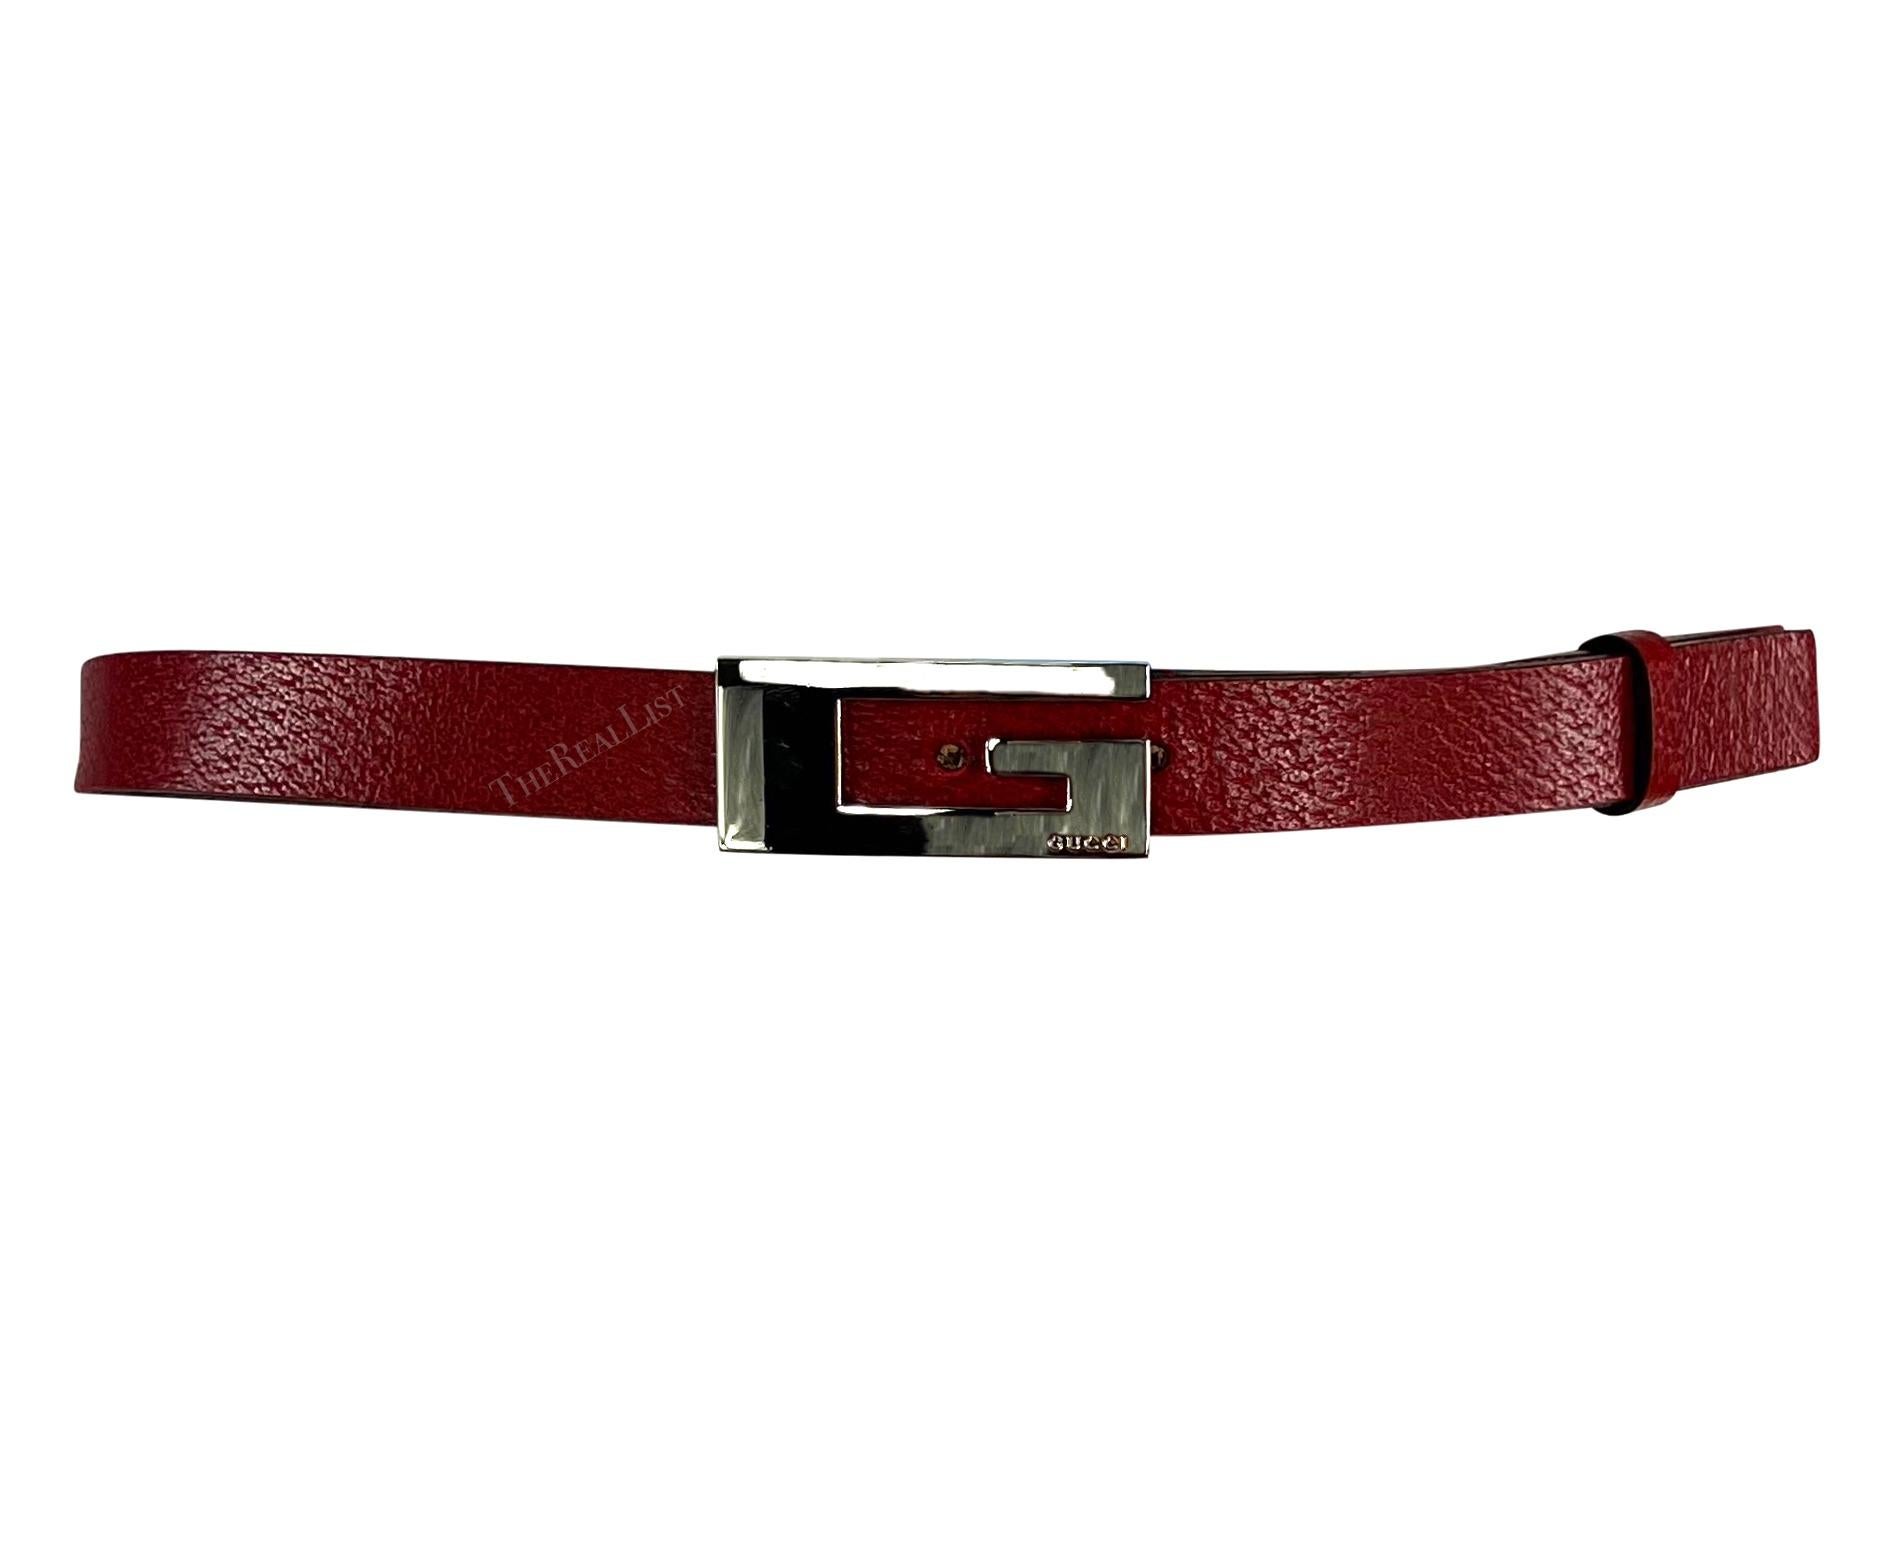 Dieser dünne Gucci-Gürtel aus Leder stammt aus den späten 1990er Jahren und wurde von Tom Ford entworfen. Sie zeichnet sich durch ein schlankes Design aus rotem Leder aus, das durch eine unverwechselbare quadratische silberne Metallschnalle mit 